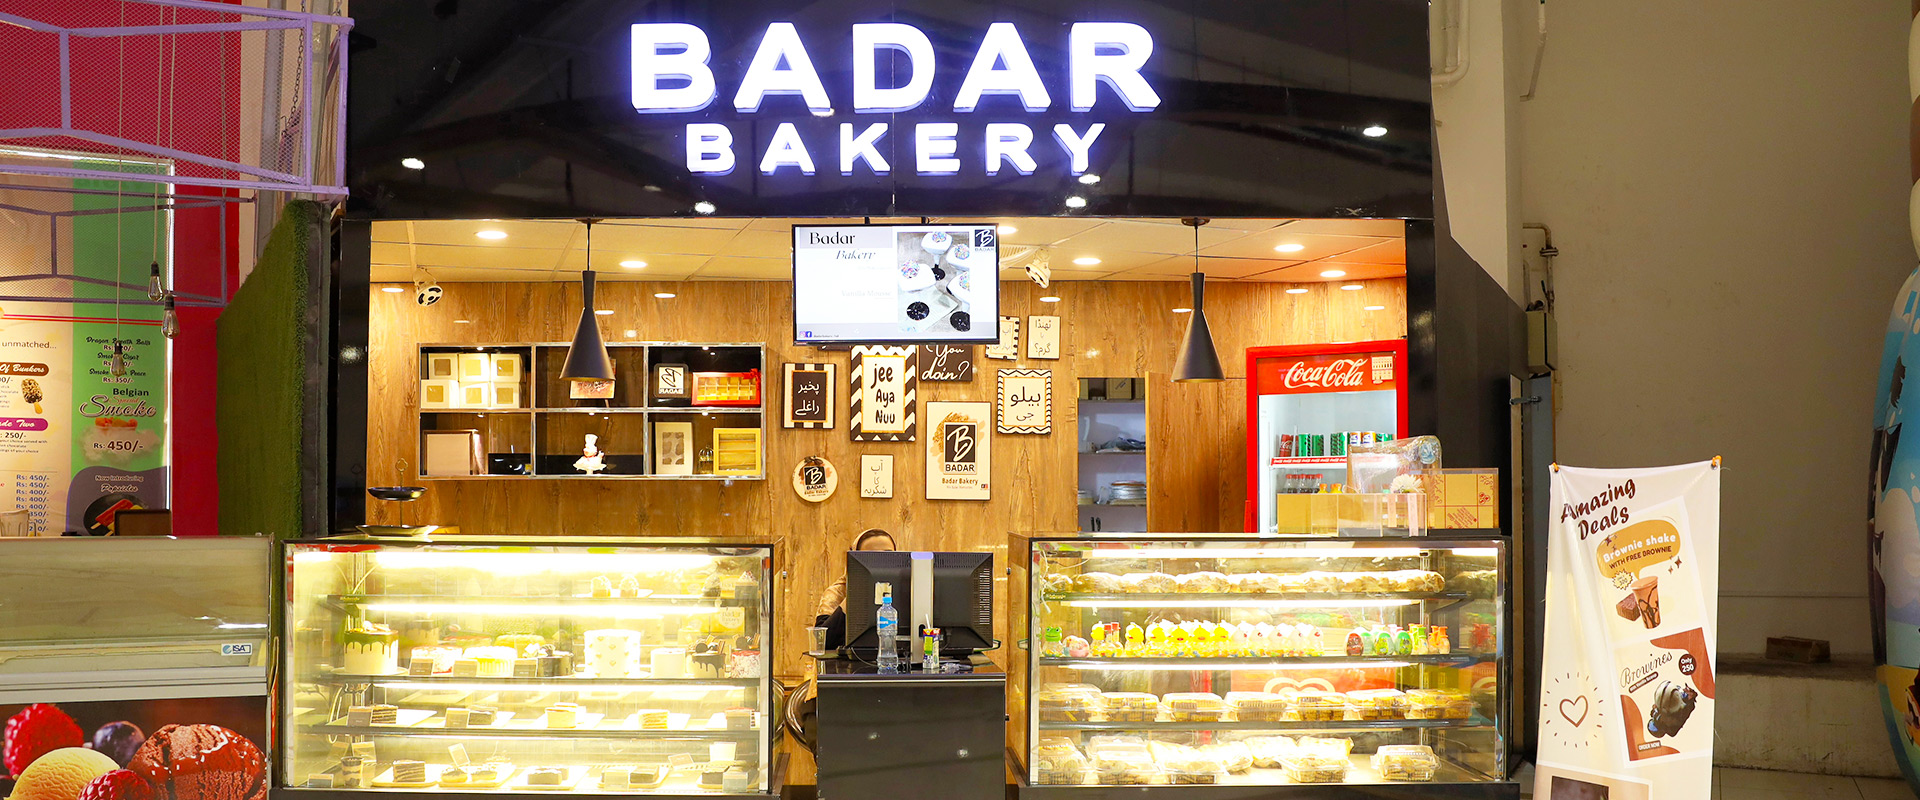 badar-bakery